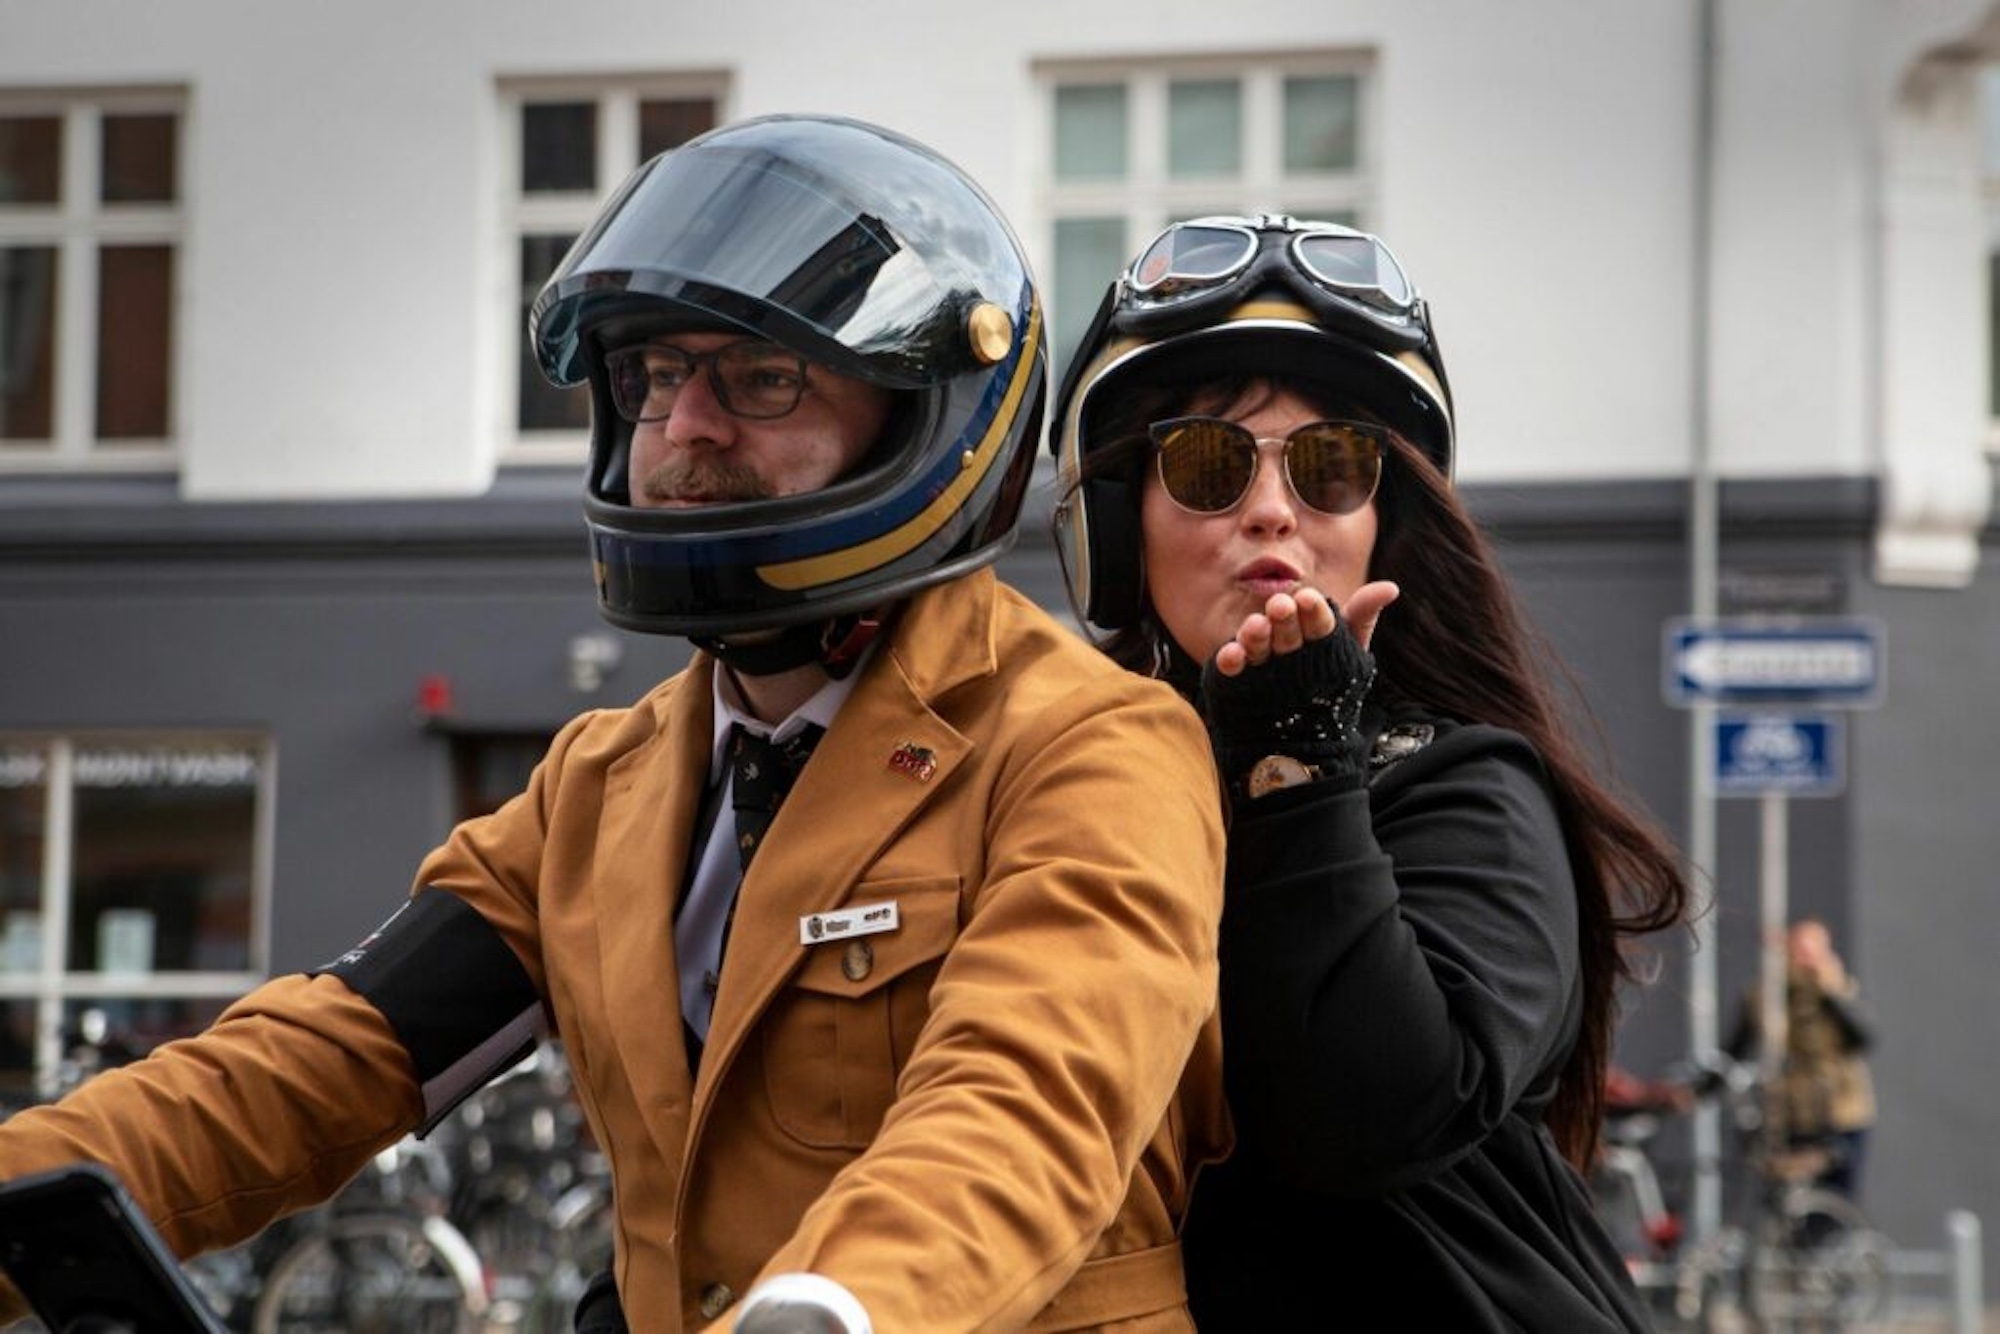 Un homme et une femme sur une moto.